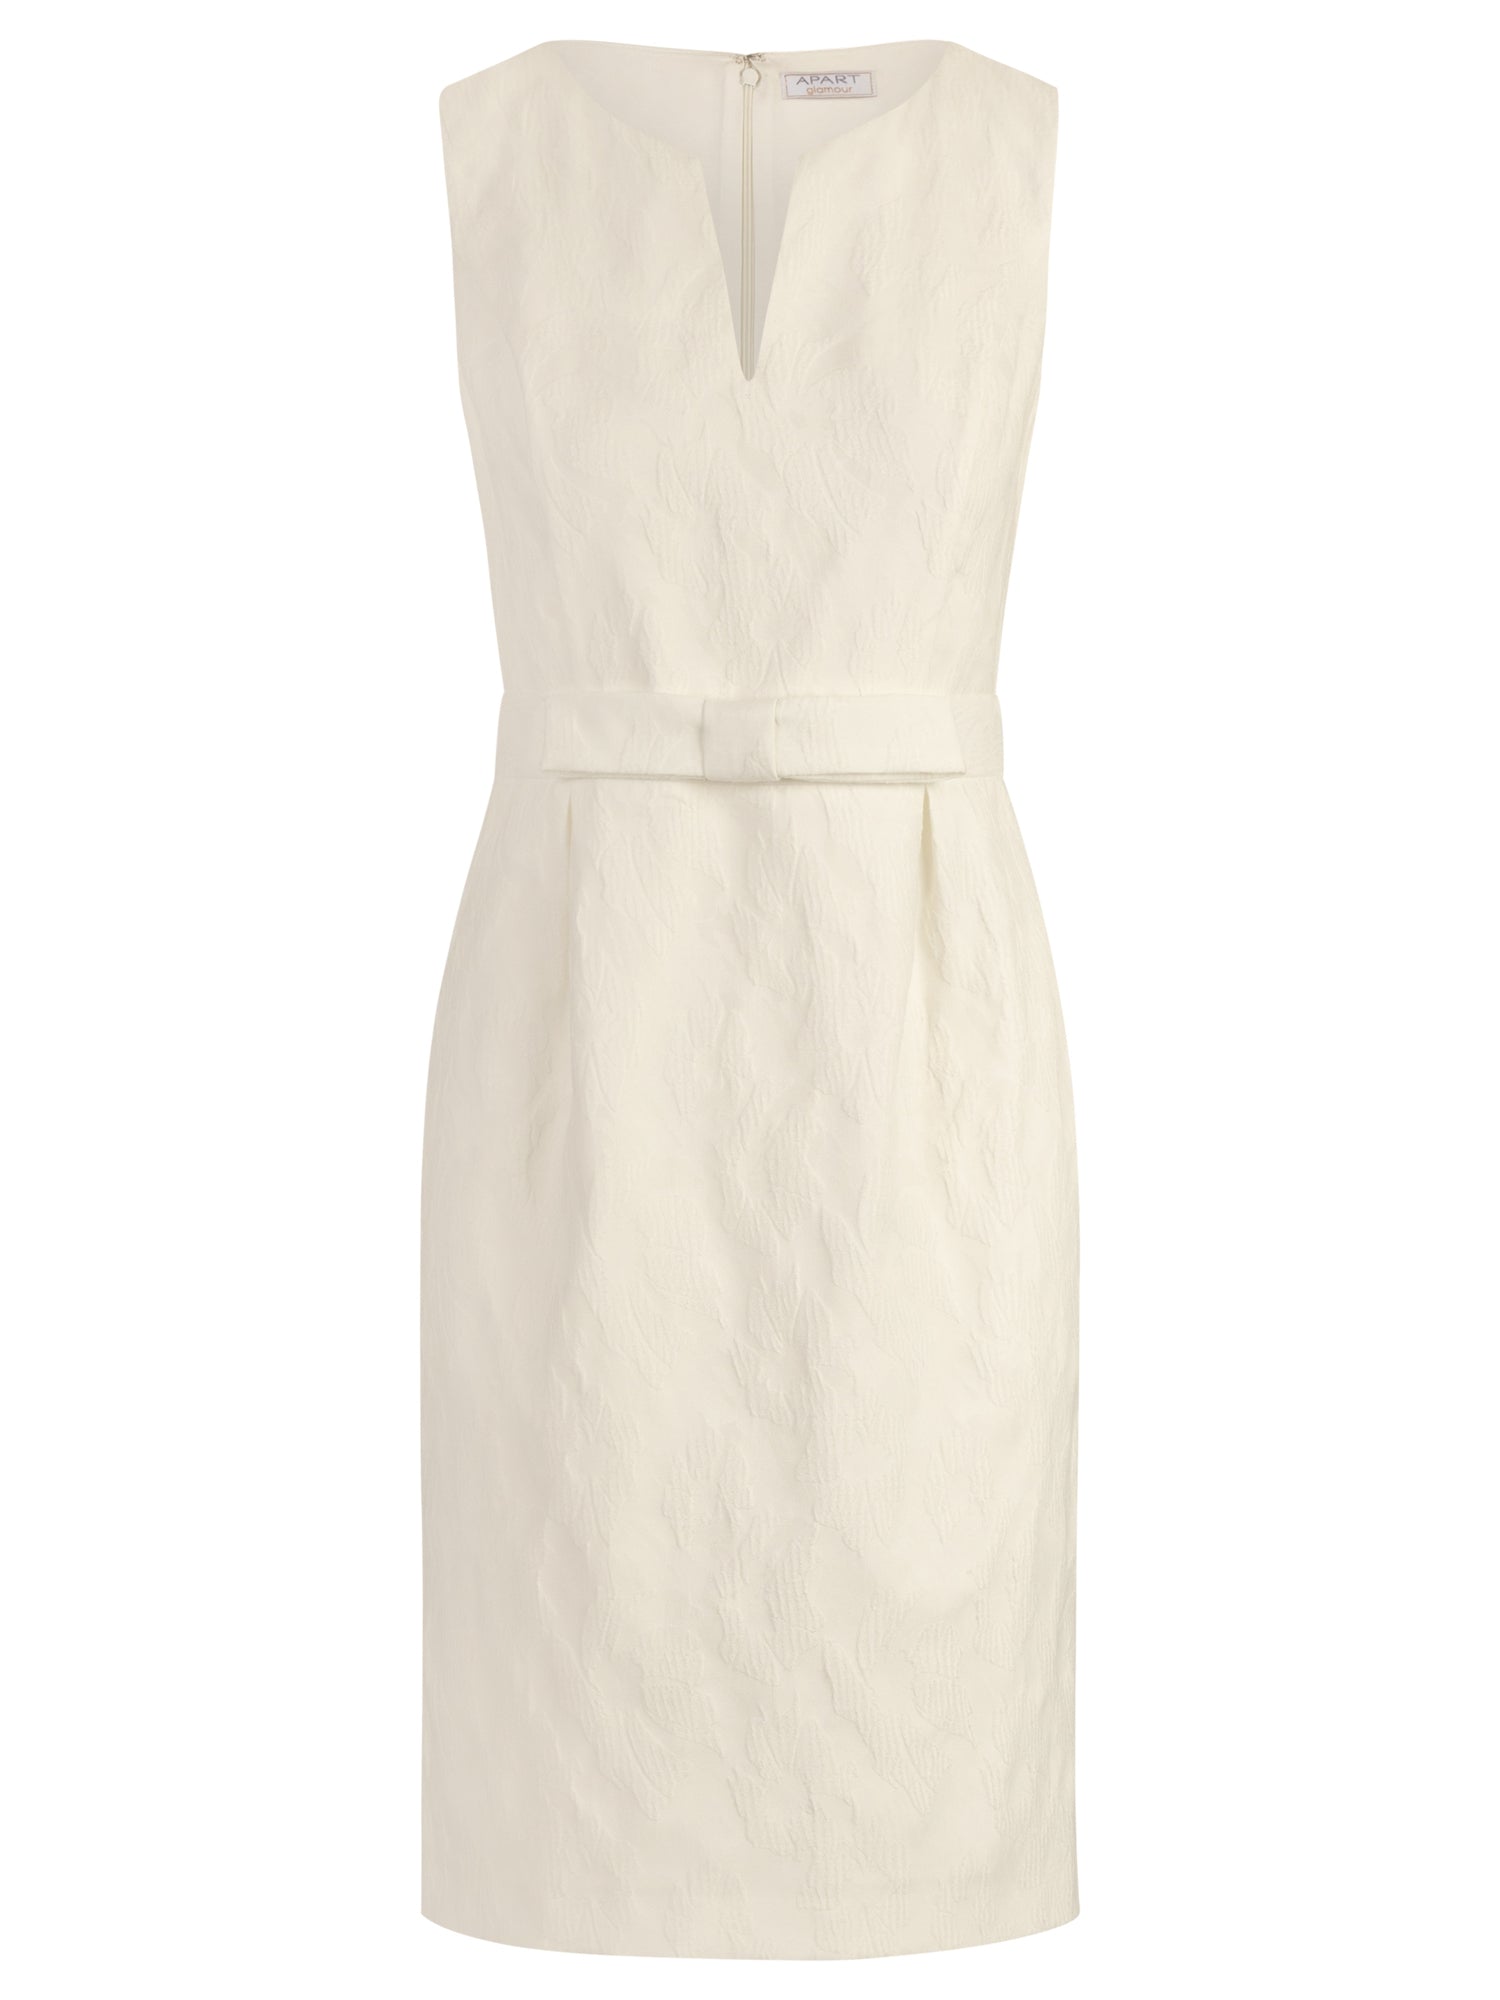 APART Hochzeitskleid aus einer leicht strukturierten Ware mit eingewebten Blüten | creme